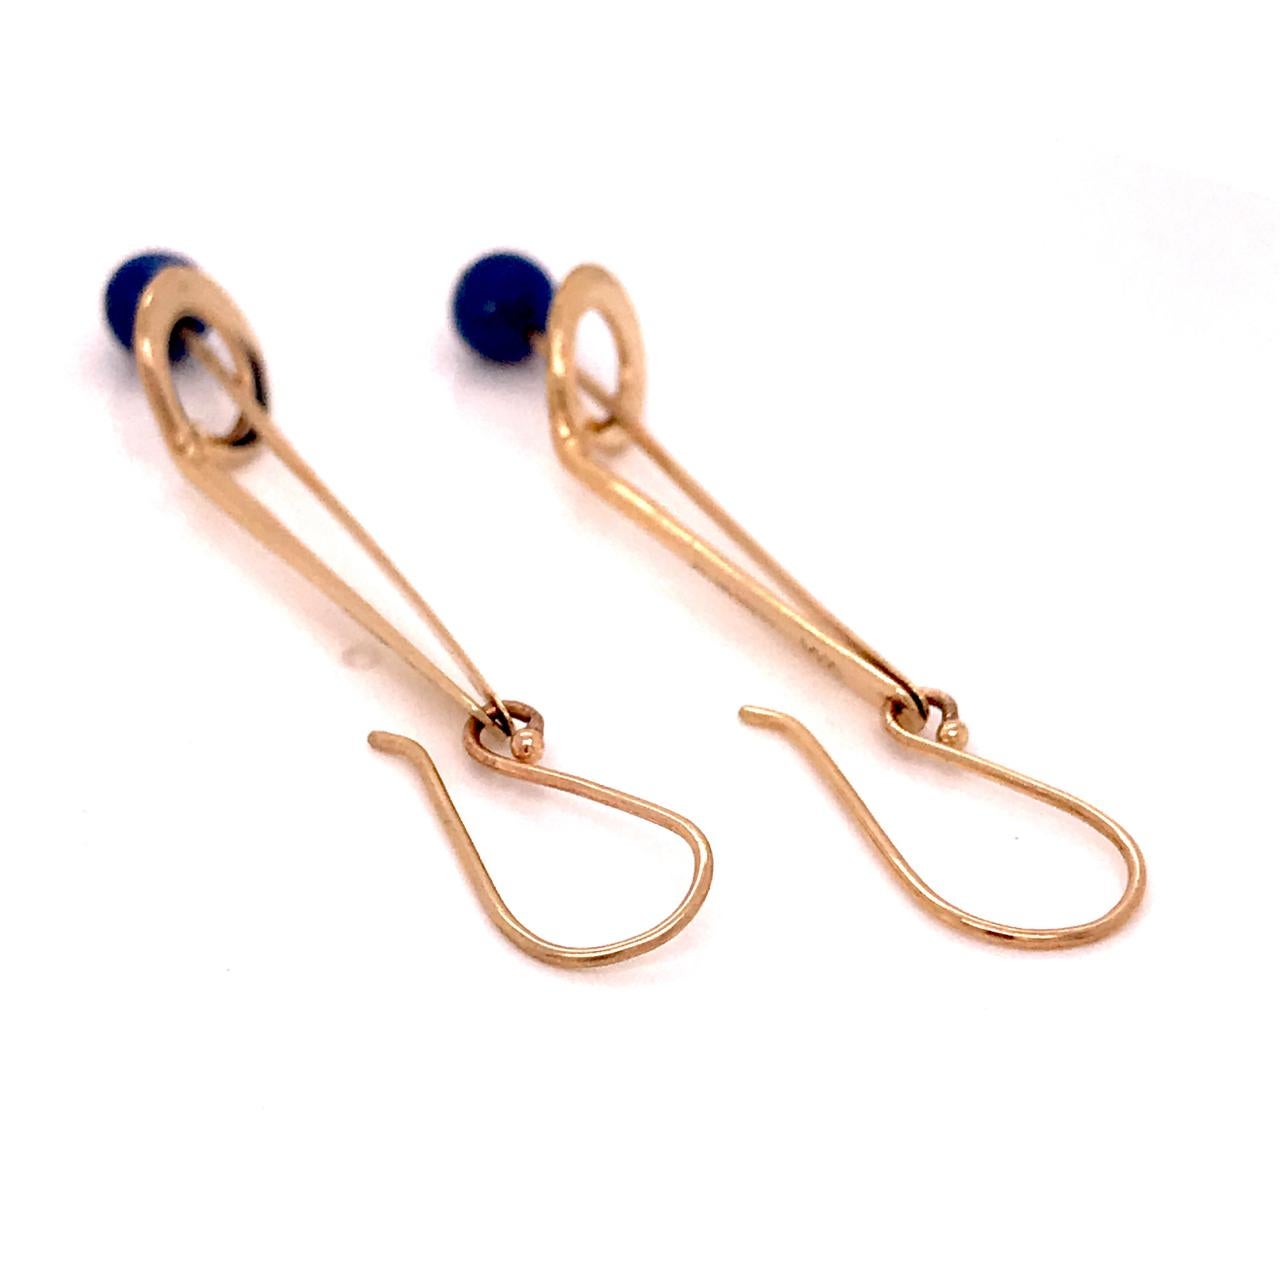 Jules Brenner Mid-Century Modernist 14 Karat Gold & Lapis Lazuli Dangle Earrings 1